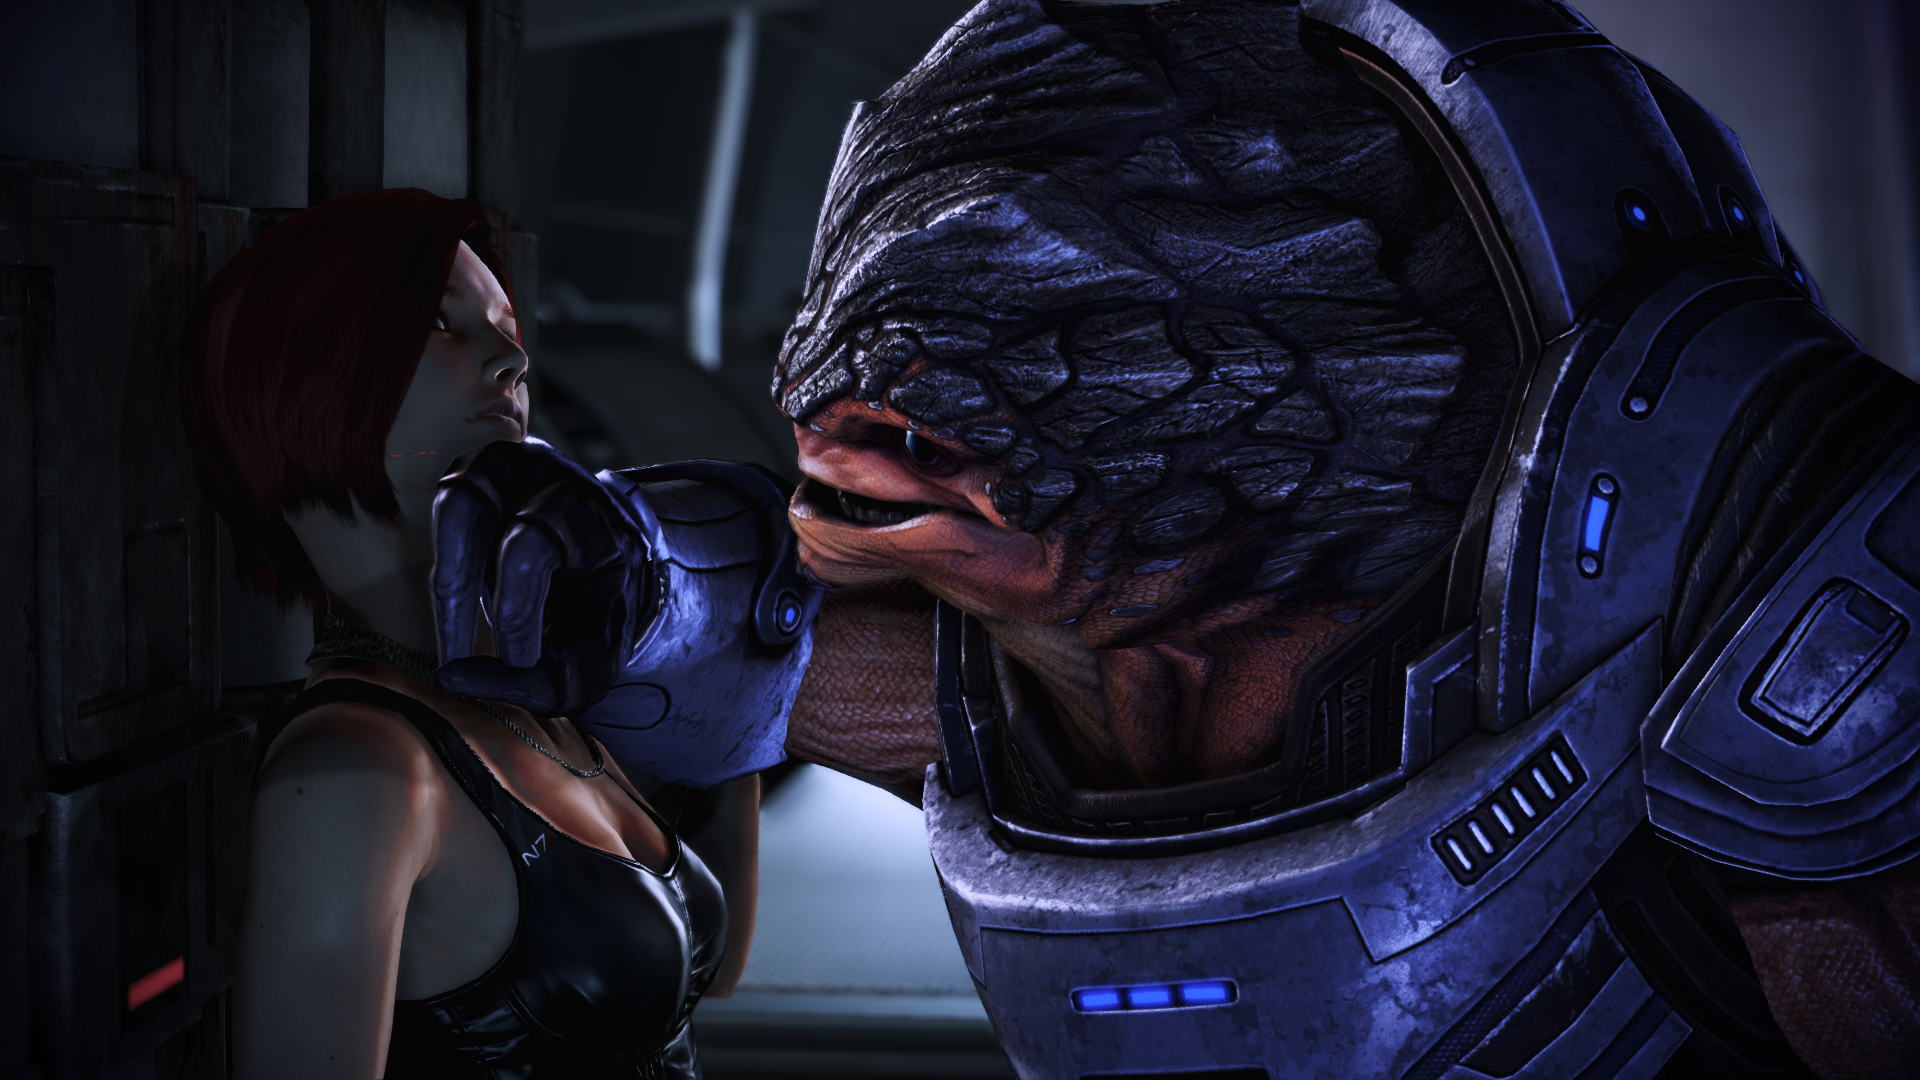 General 1920x1080 Mass Effect: Legendary Edition Mass Effect 2 Jane Shepard video games Grunt (Mass Effect) Mass Effect video game characters Bioware Electronic Arts